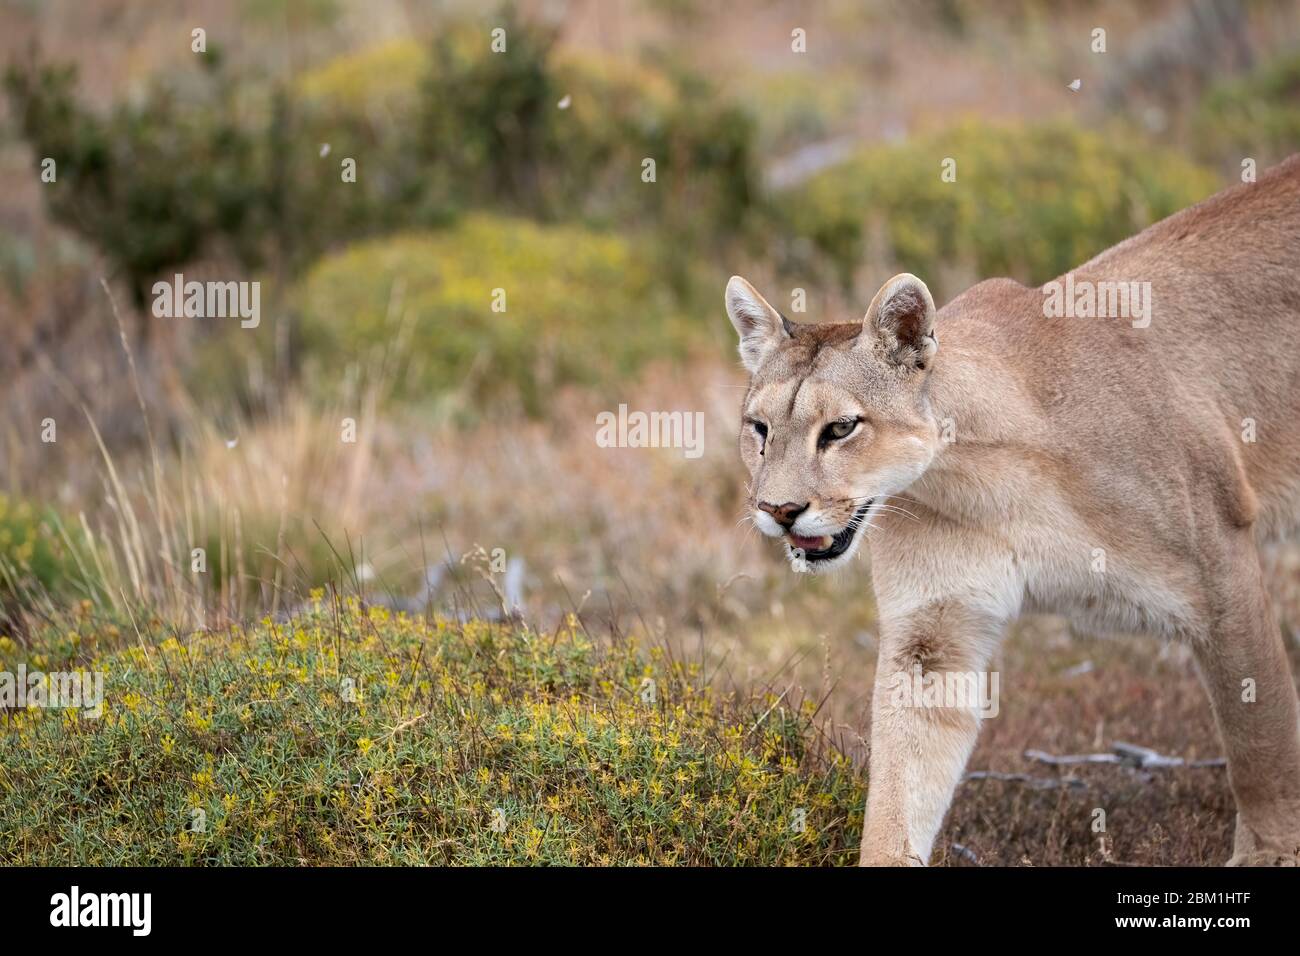 Alleinstehende Erwachsene weibliche puma in hellem Sonnenlicht durch das Gras zu Fuß. Auch bekannt als Cougar oder Berglöwe. Stockfoto